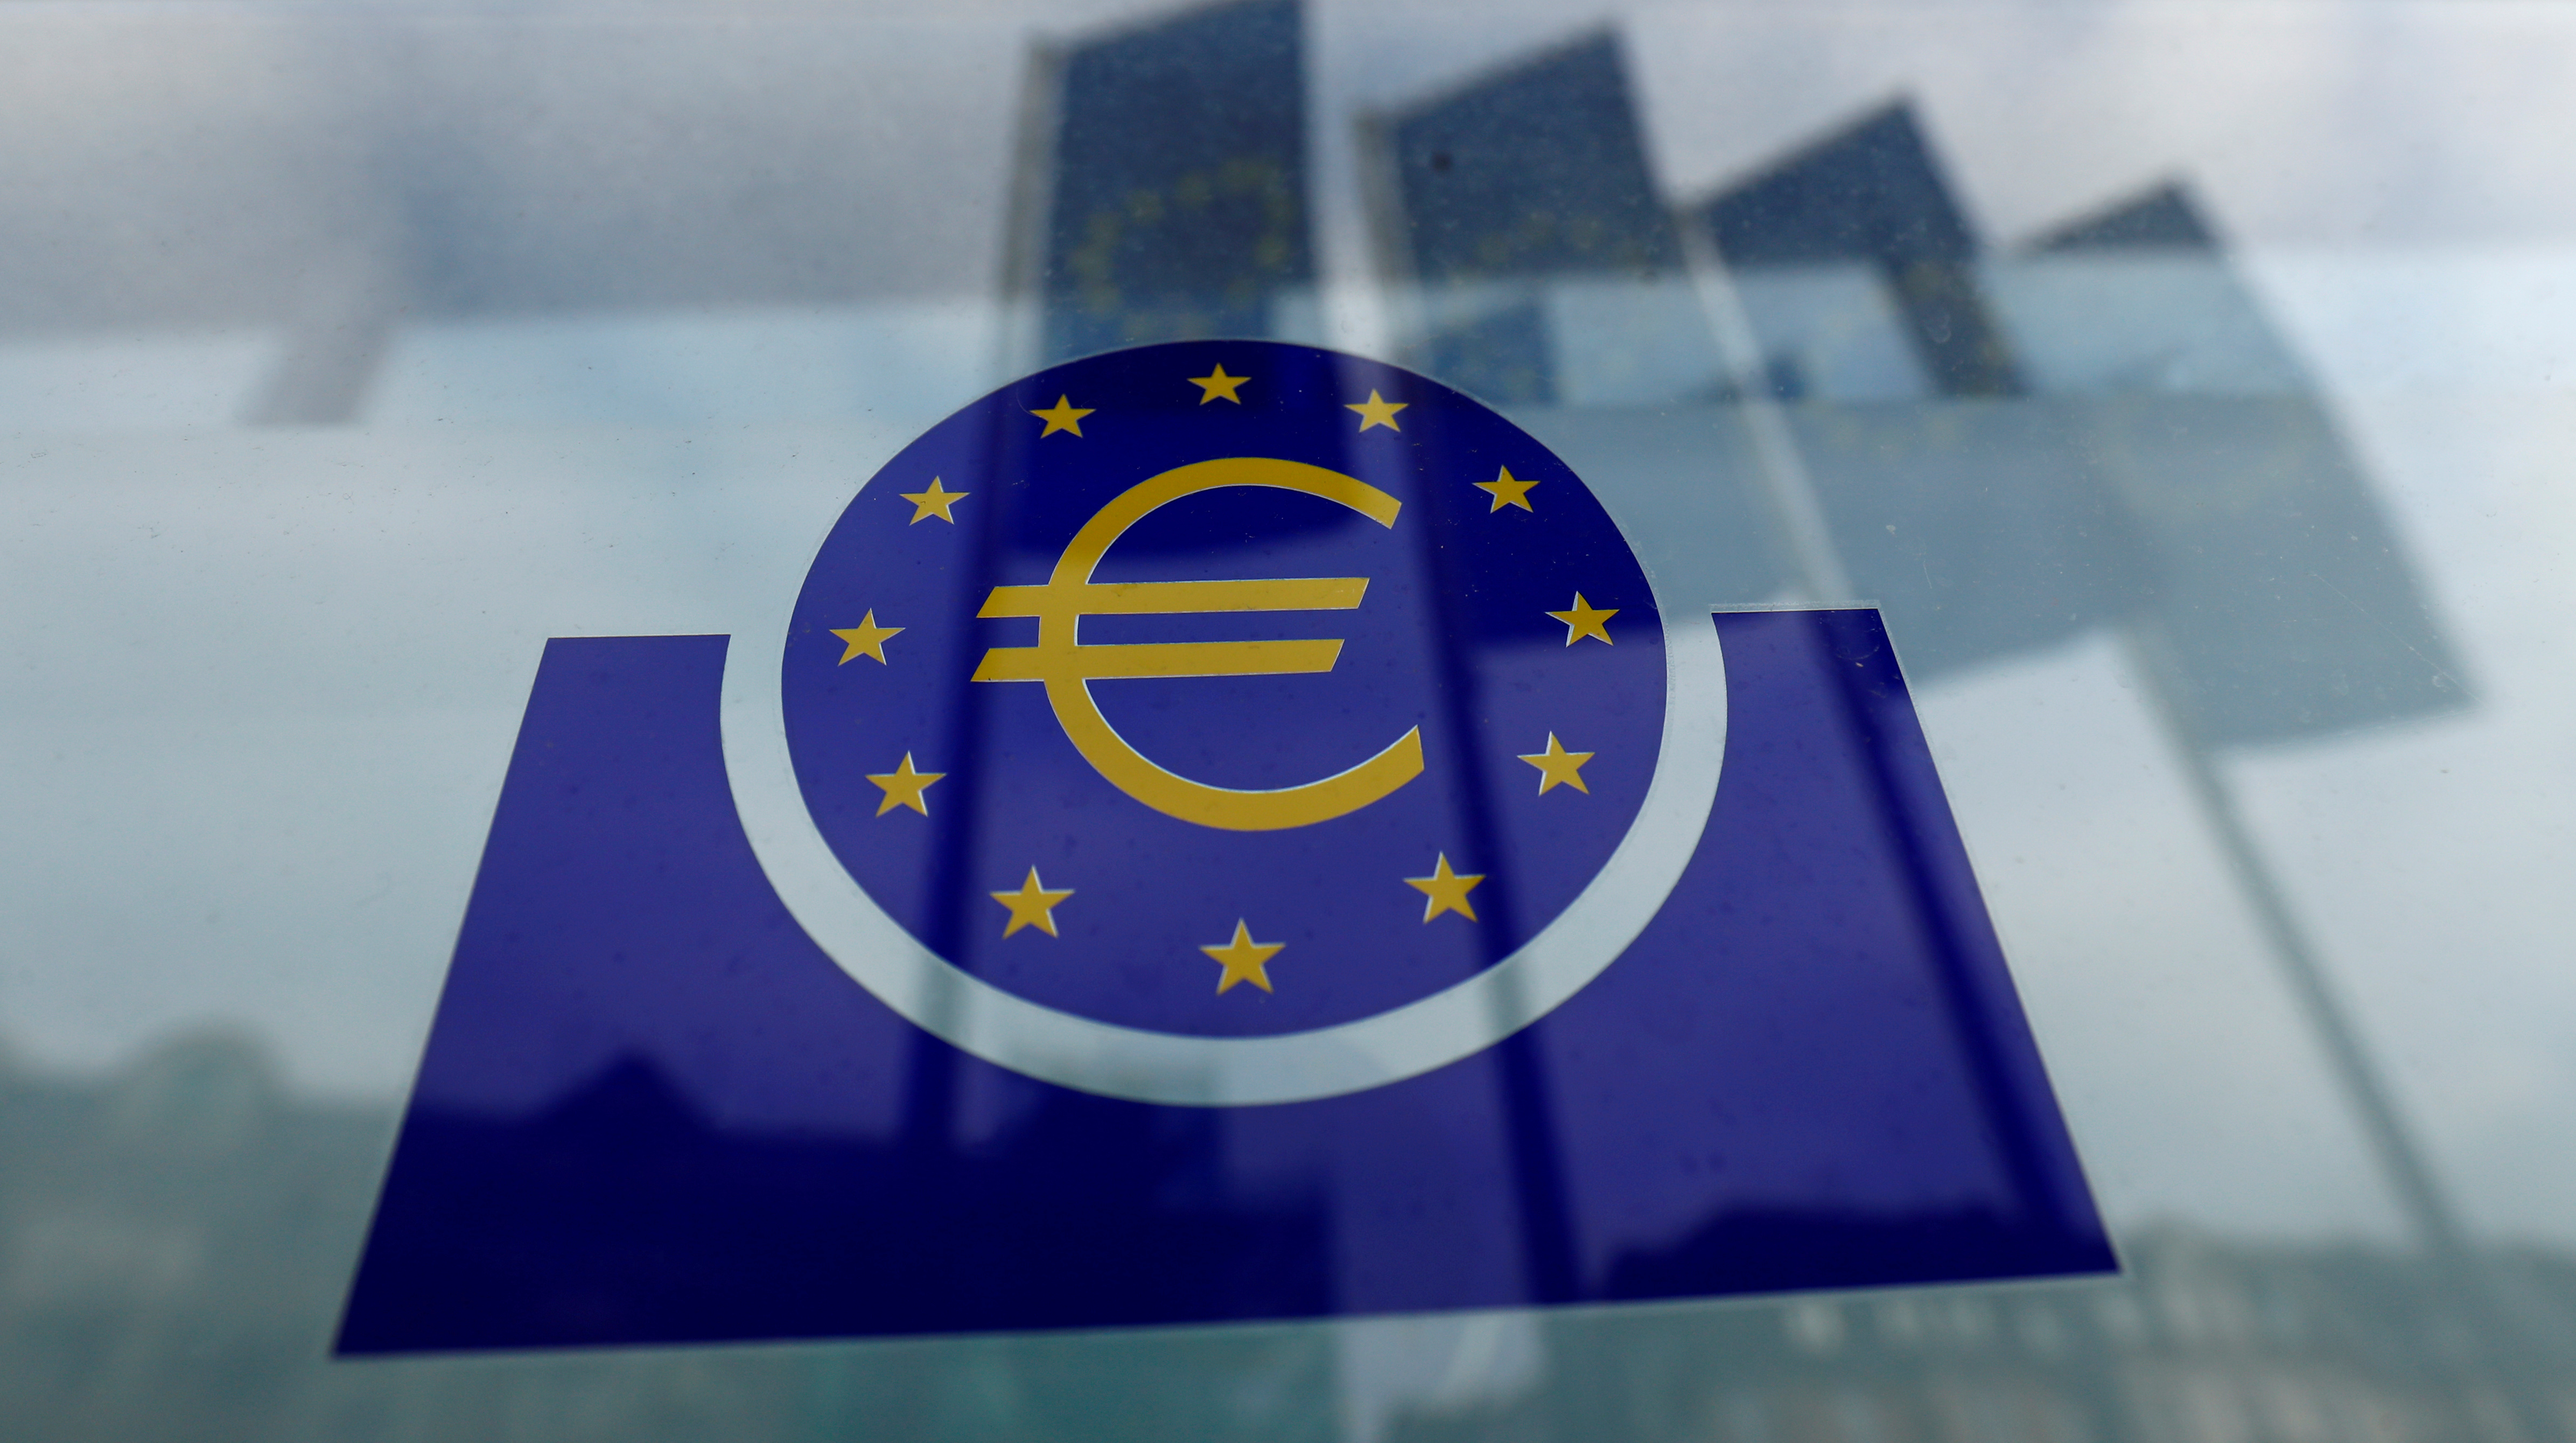 Des euros numériques? L'idée d'une monnaie électronique émise par la Banque centrale, boostée par la pandémie